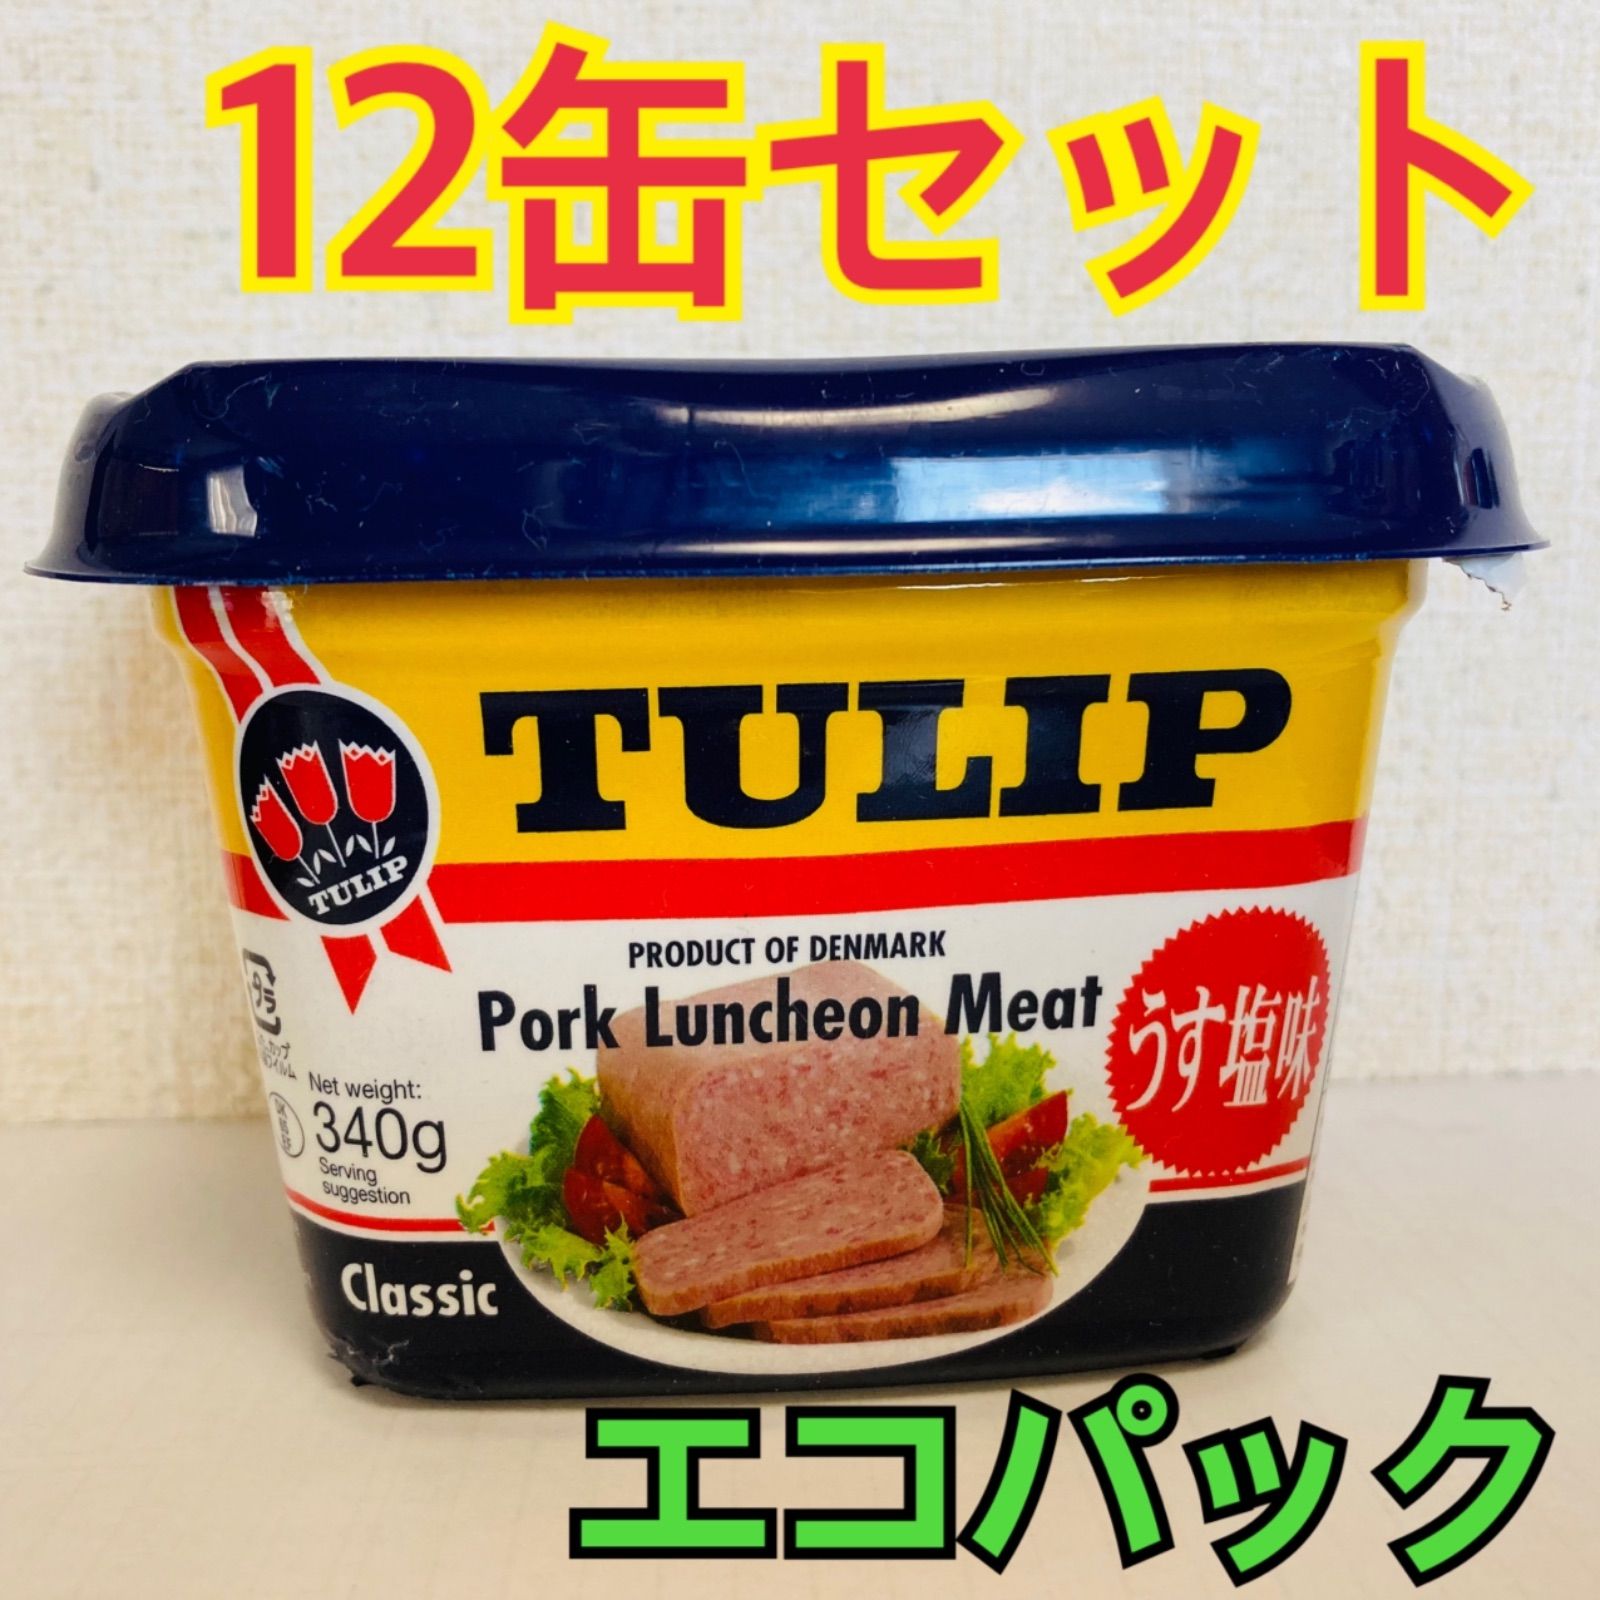 12缶セット☆わしたポーク☆ランチョンミート☆沖縄産豚肉・鶏肉使用☆